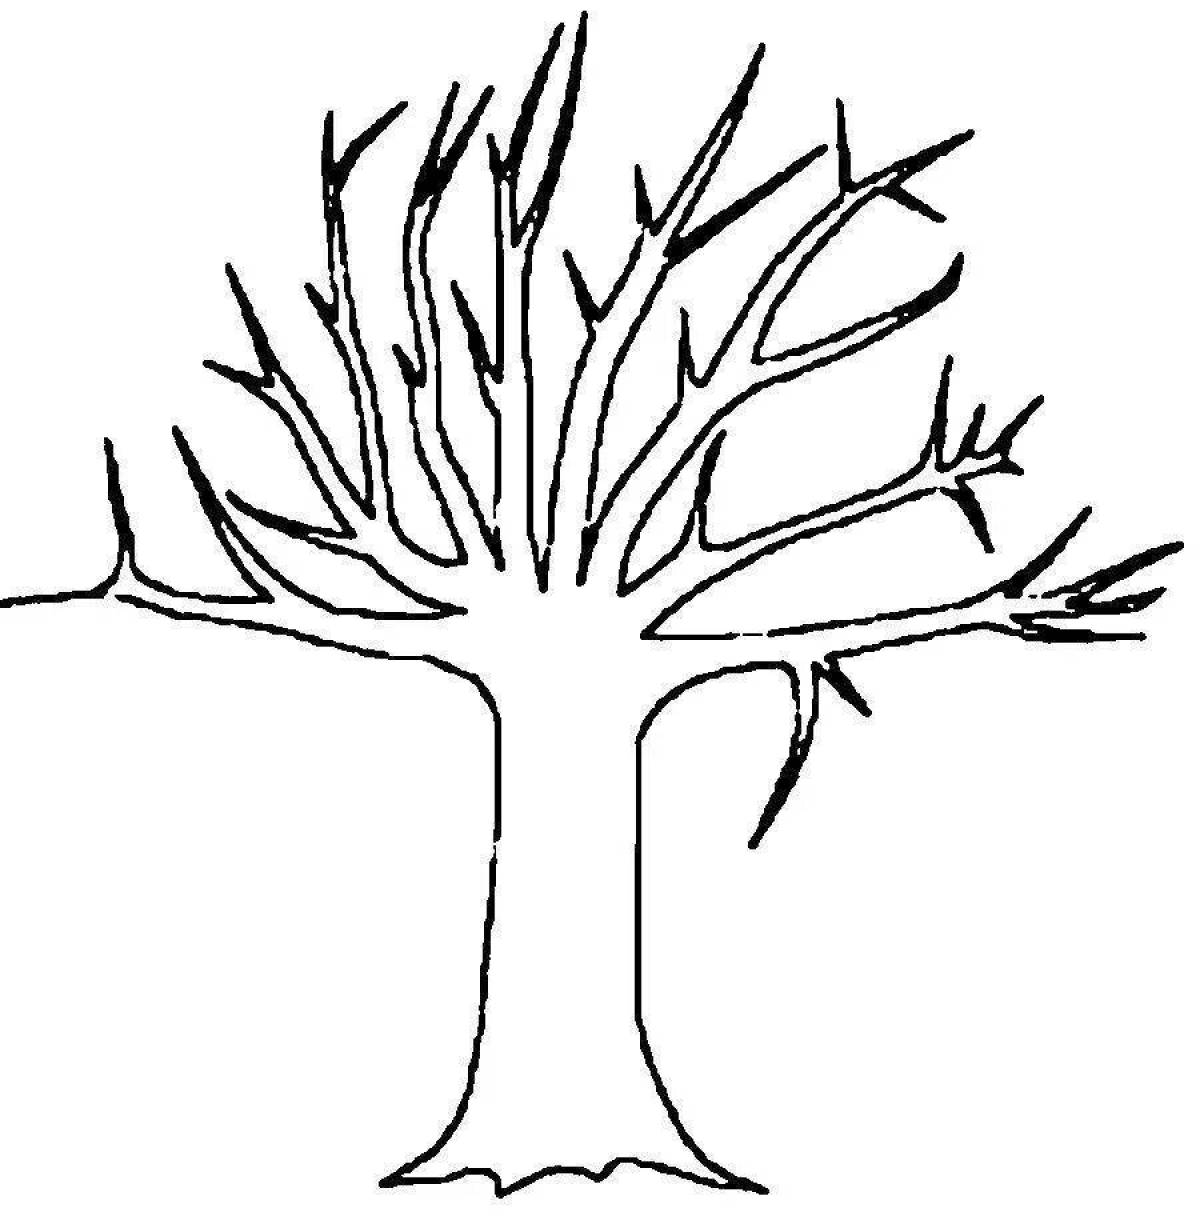 Забавный рисунок раскидистого дерева